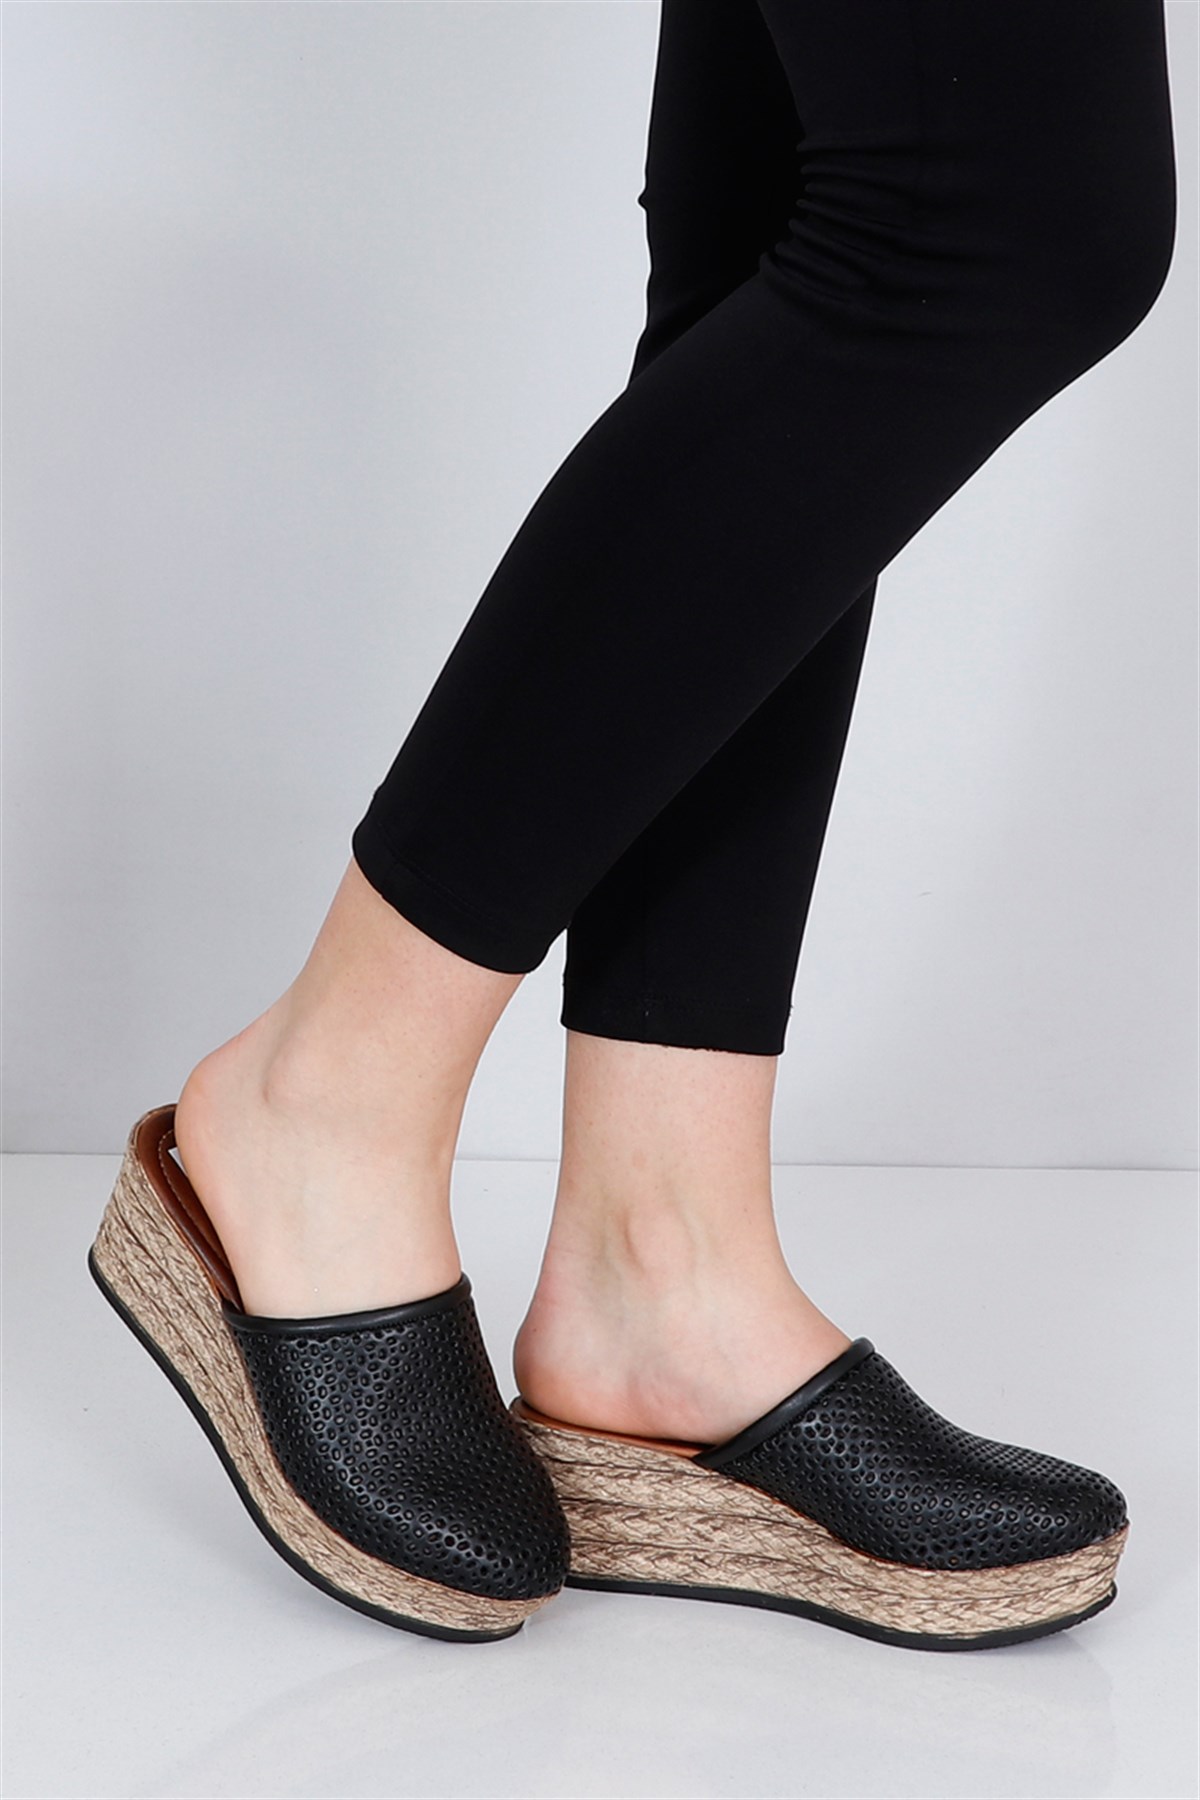 Siyah Dolgu Topuk Kapalı Kadın Terlik 2020-1 K Fiyatı ve Modelleri